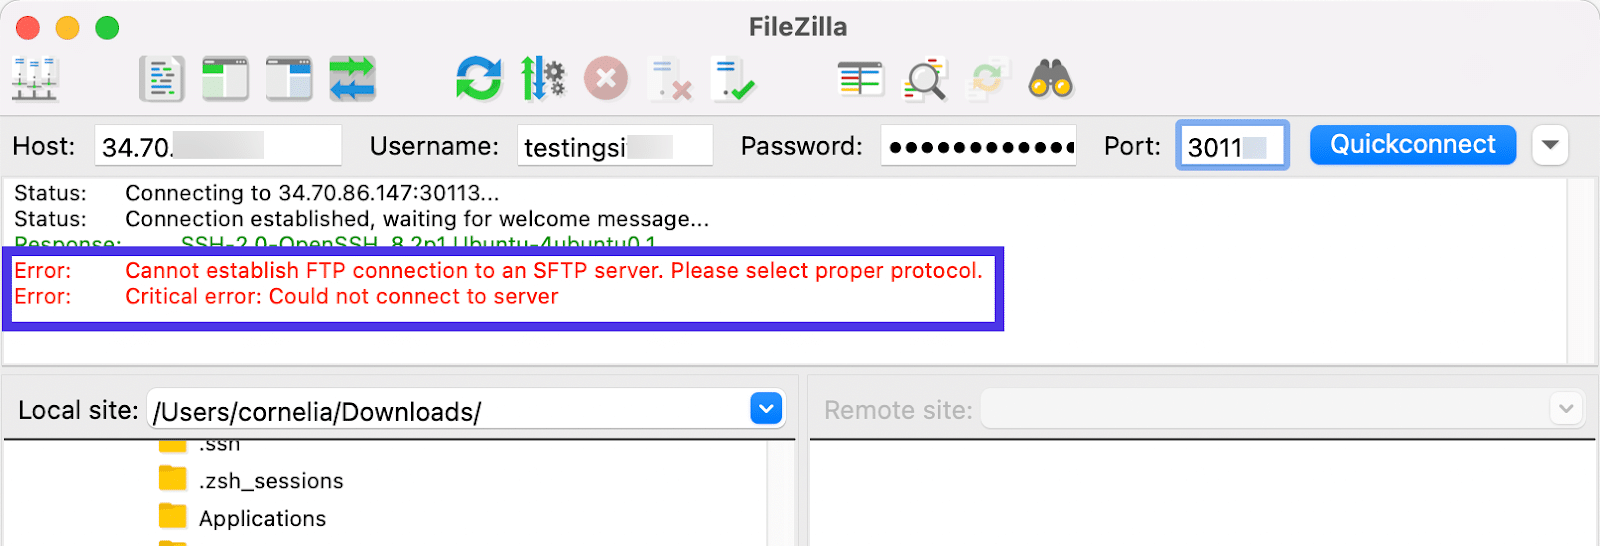 Schermata di FileZilla dove nella barra delle notifiche compaiono due messaggi di errore.